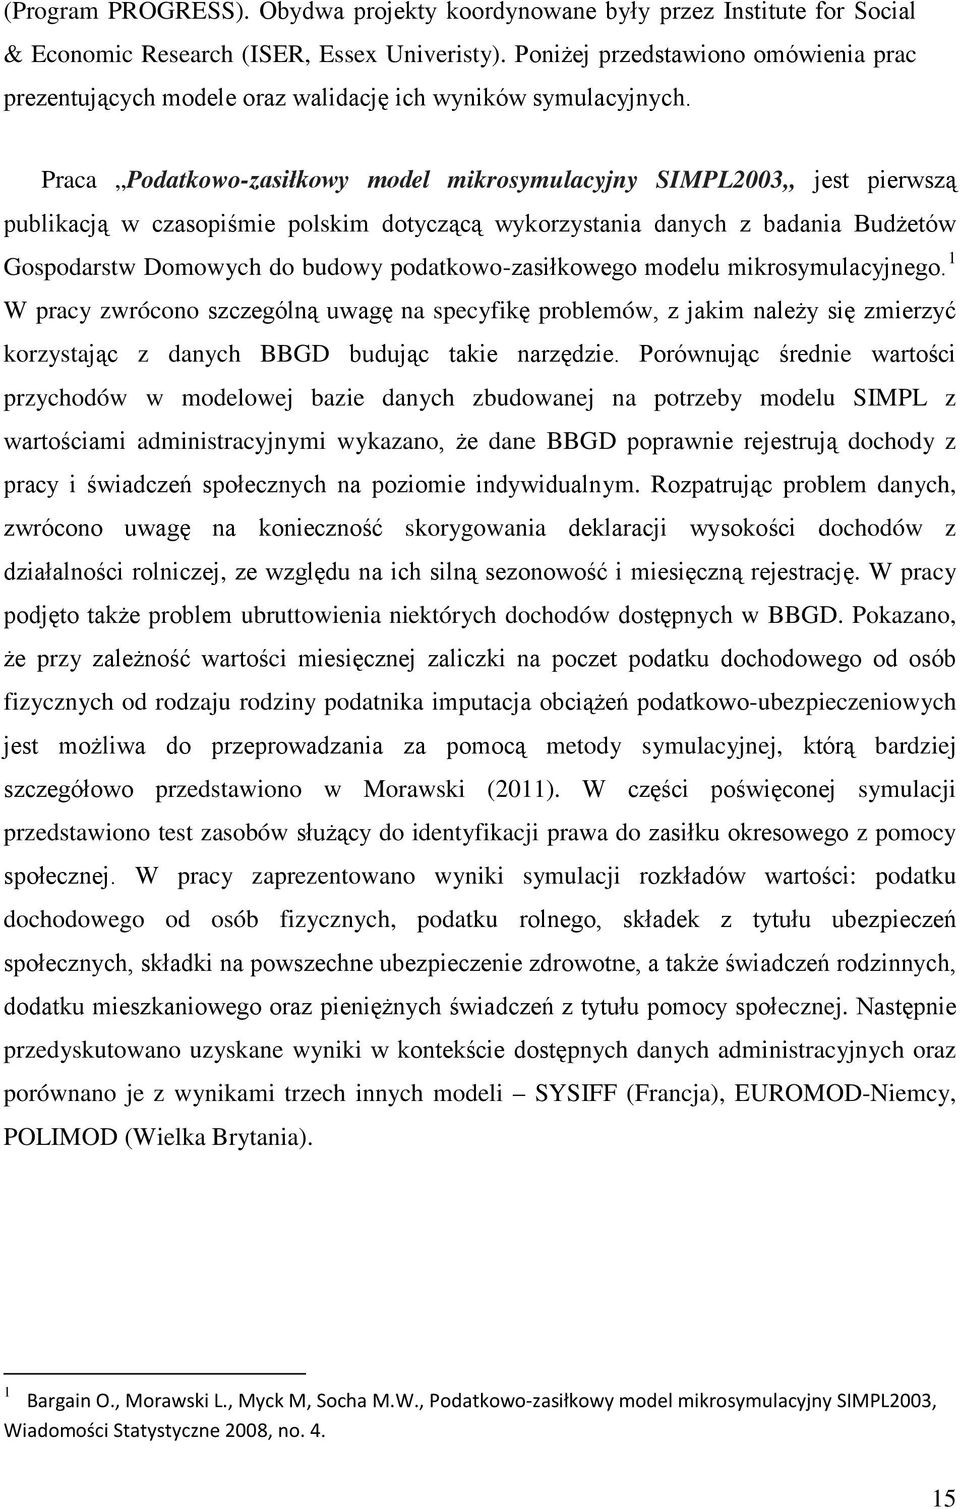 Praca Podatkowo-zasiłkowy model mikrosymulacyjny SIMPL2003 jest pierwszą publikacją w czasopiśmie polskim dotyczącą wykorzystania danych z badania Budżetów Gospodarstw Domowych do budowy